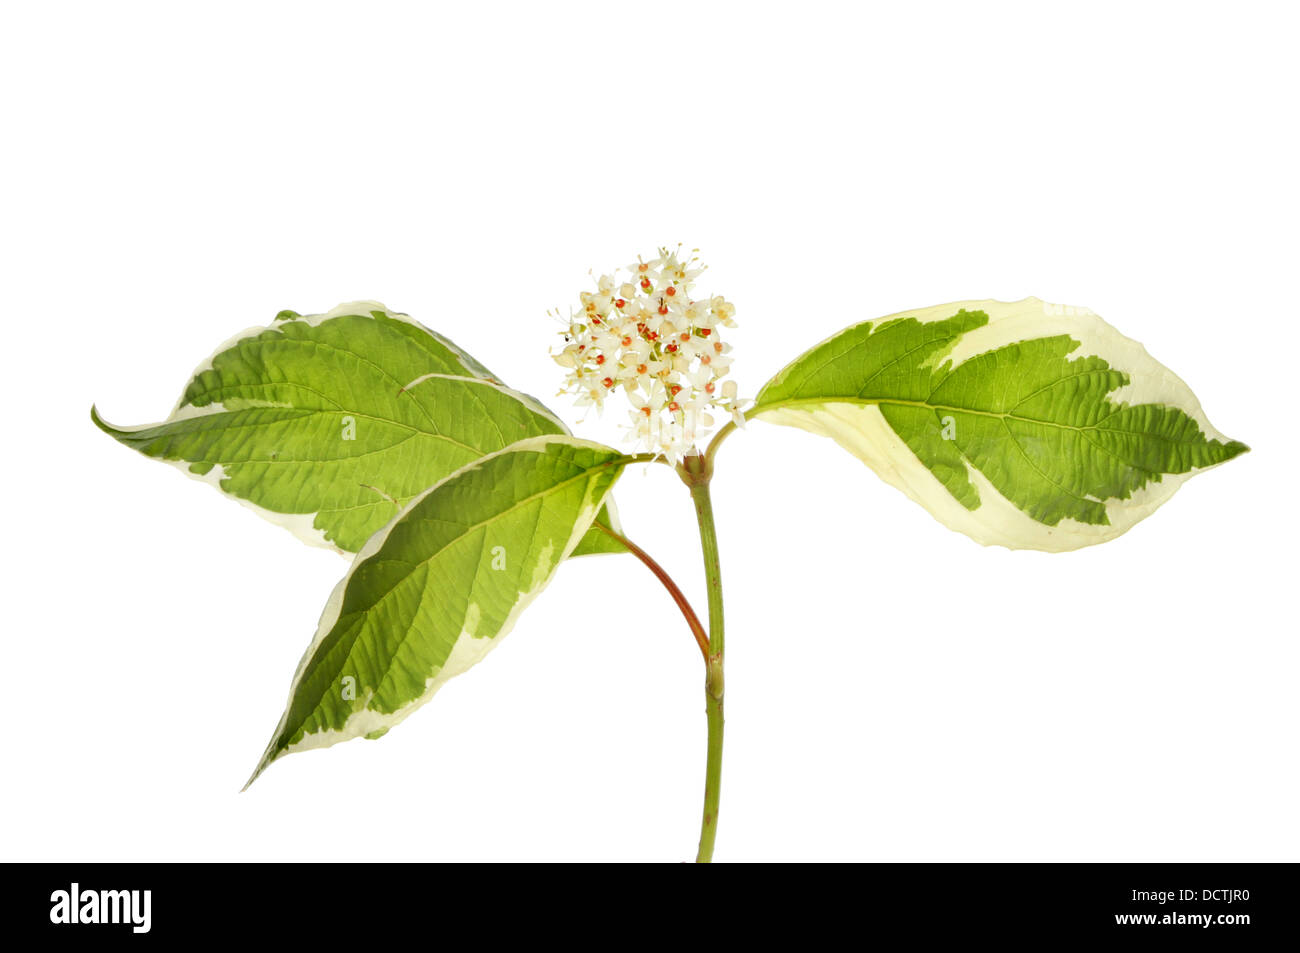 Sanguinello,cornus, fiori e foglie variegato isolata contro bianco Foto Stock